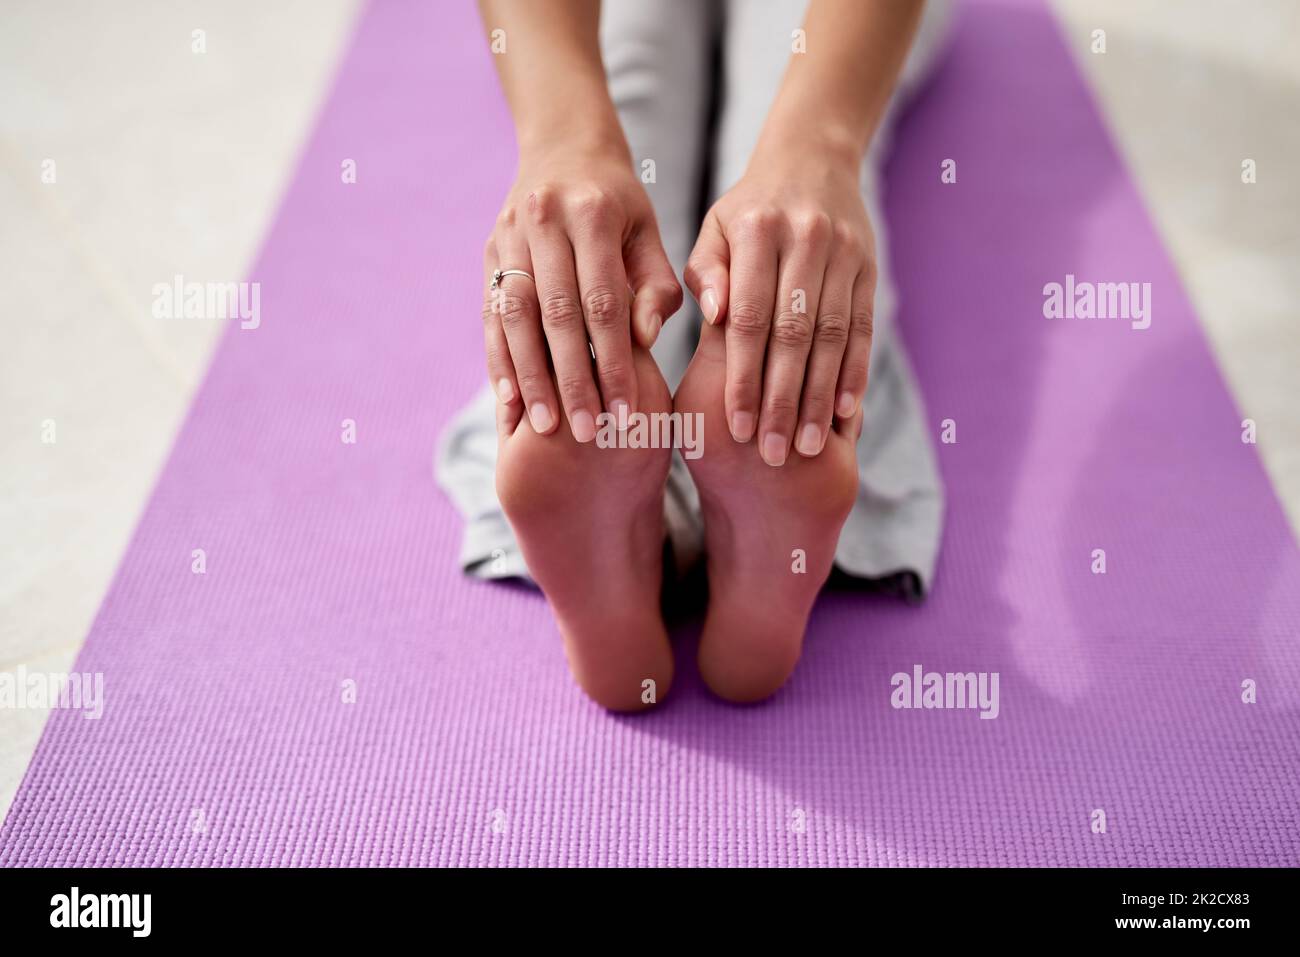 Garder la souplesse et la souplesse avec le yoga. Prise de vue d'une jeune femme qui touche ses orteils tout en pratiquant le yoga à l'extérieur par un jour ensoleillé. Banque D'Images